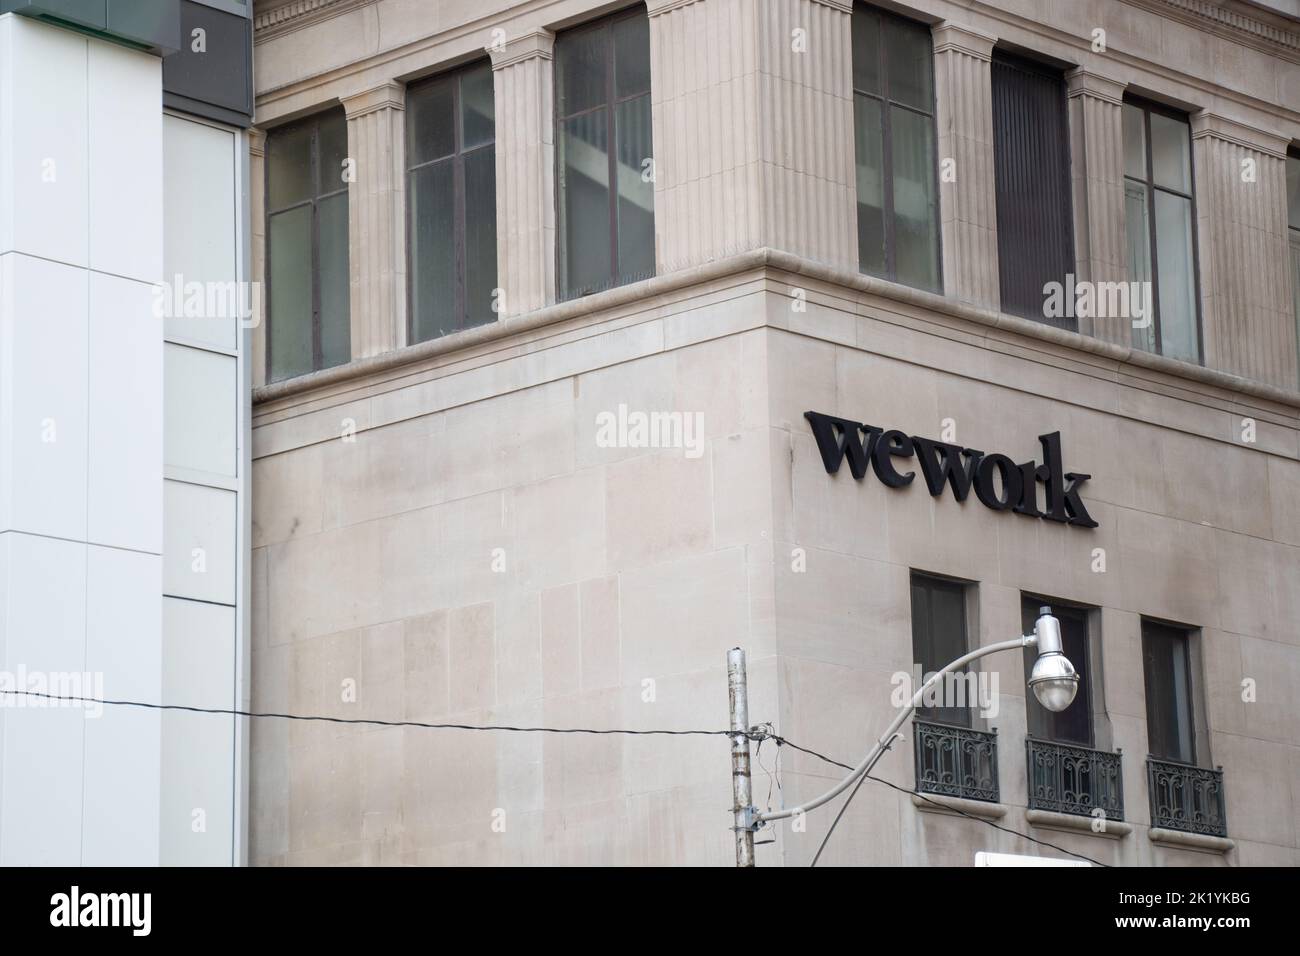 Le logo WeWork se trouve sur le côté d'un immeuble de bureaux au centre-ville de Toronto; WeWork est un fournisseur d'espaces de travail pour les collègues. Banque D'Images